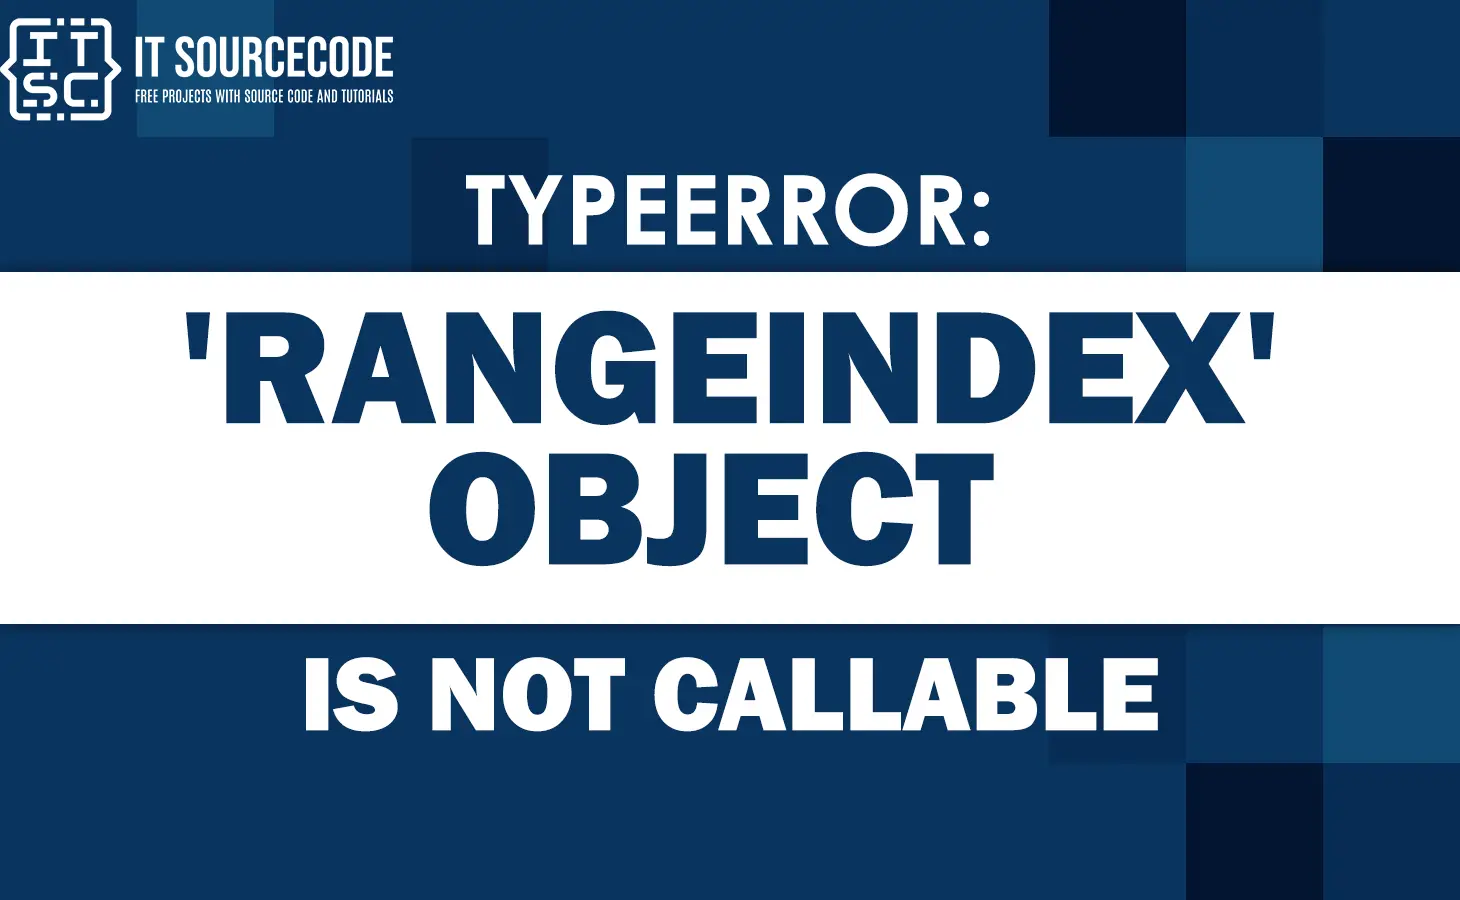 Typeerror rangeindex object is not callable